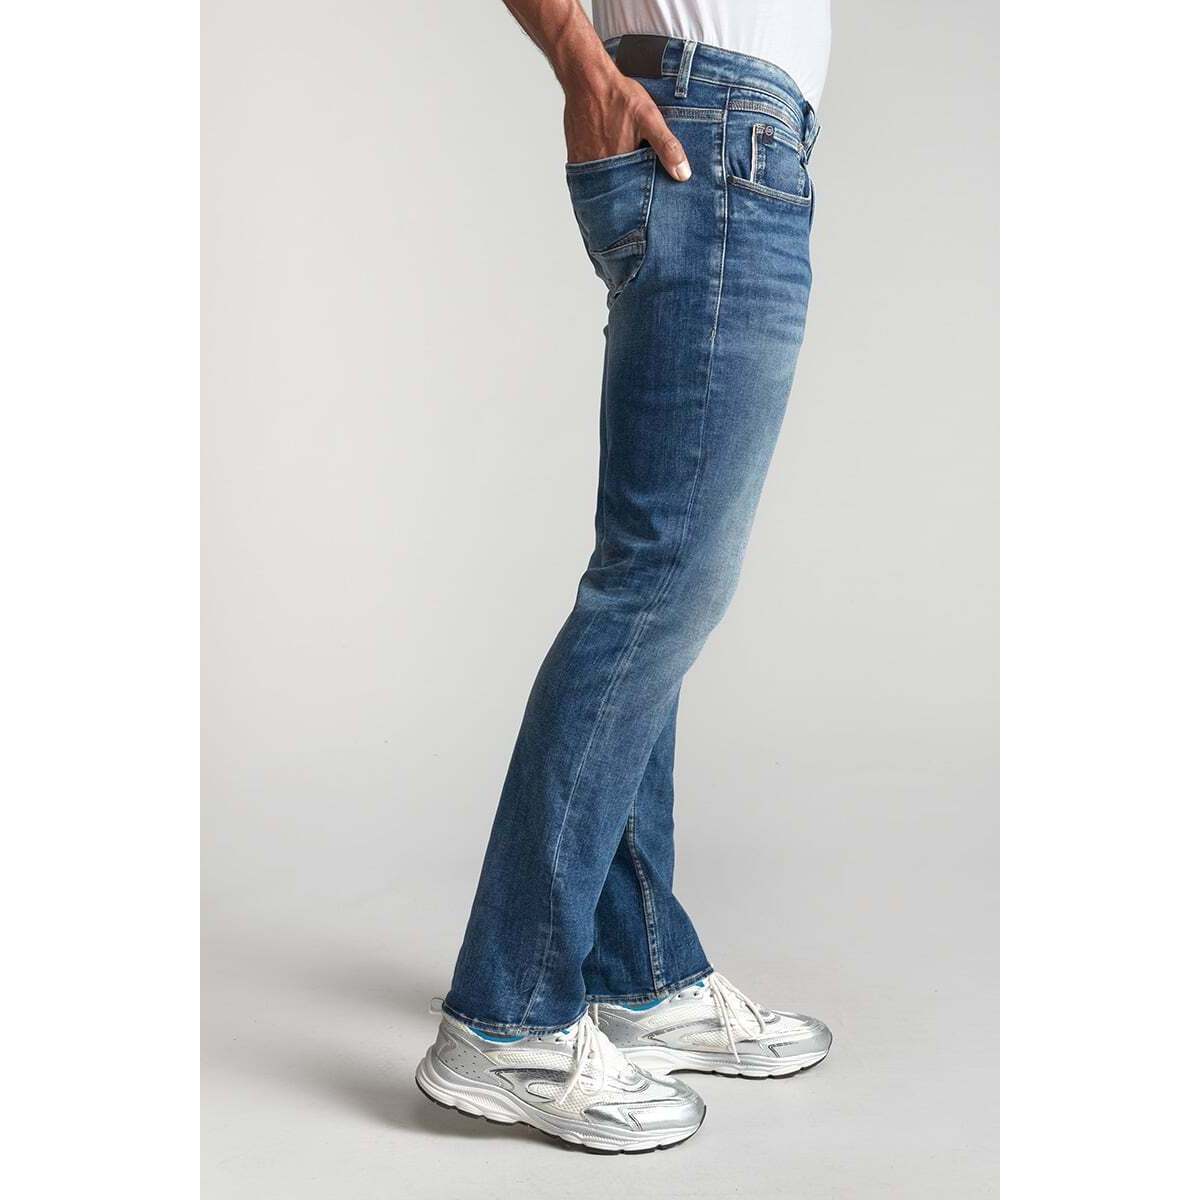 Le Temps des Cerises Bleu Vic jogg 800/12 regular jeans bleu lZxIEbkT